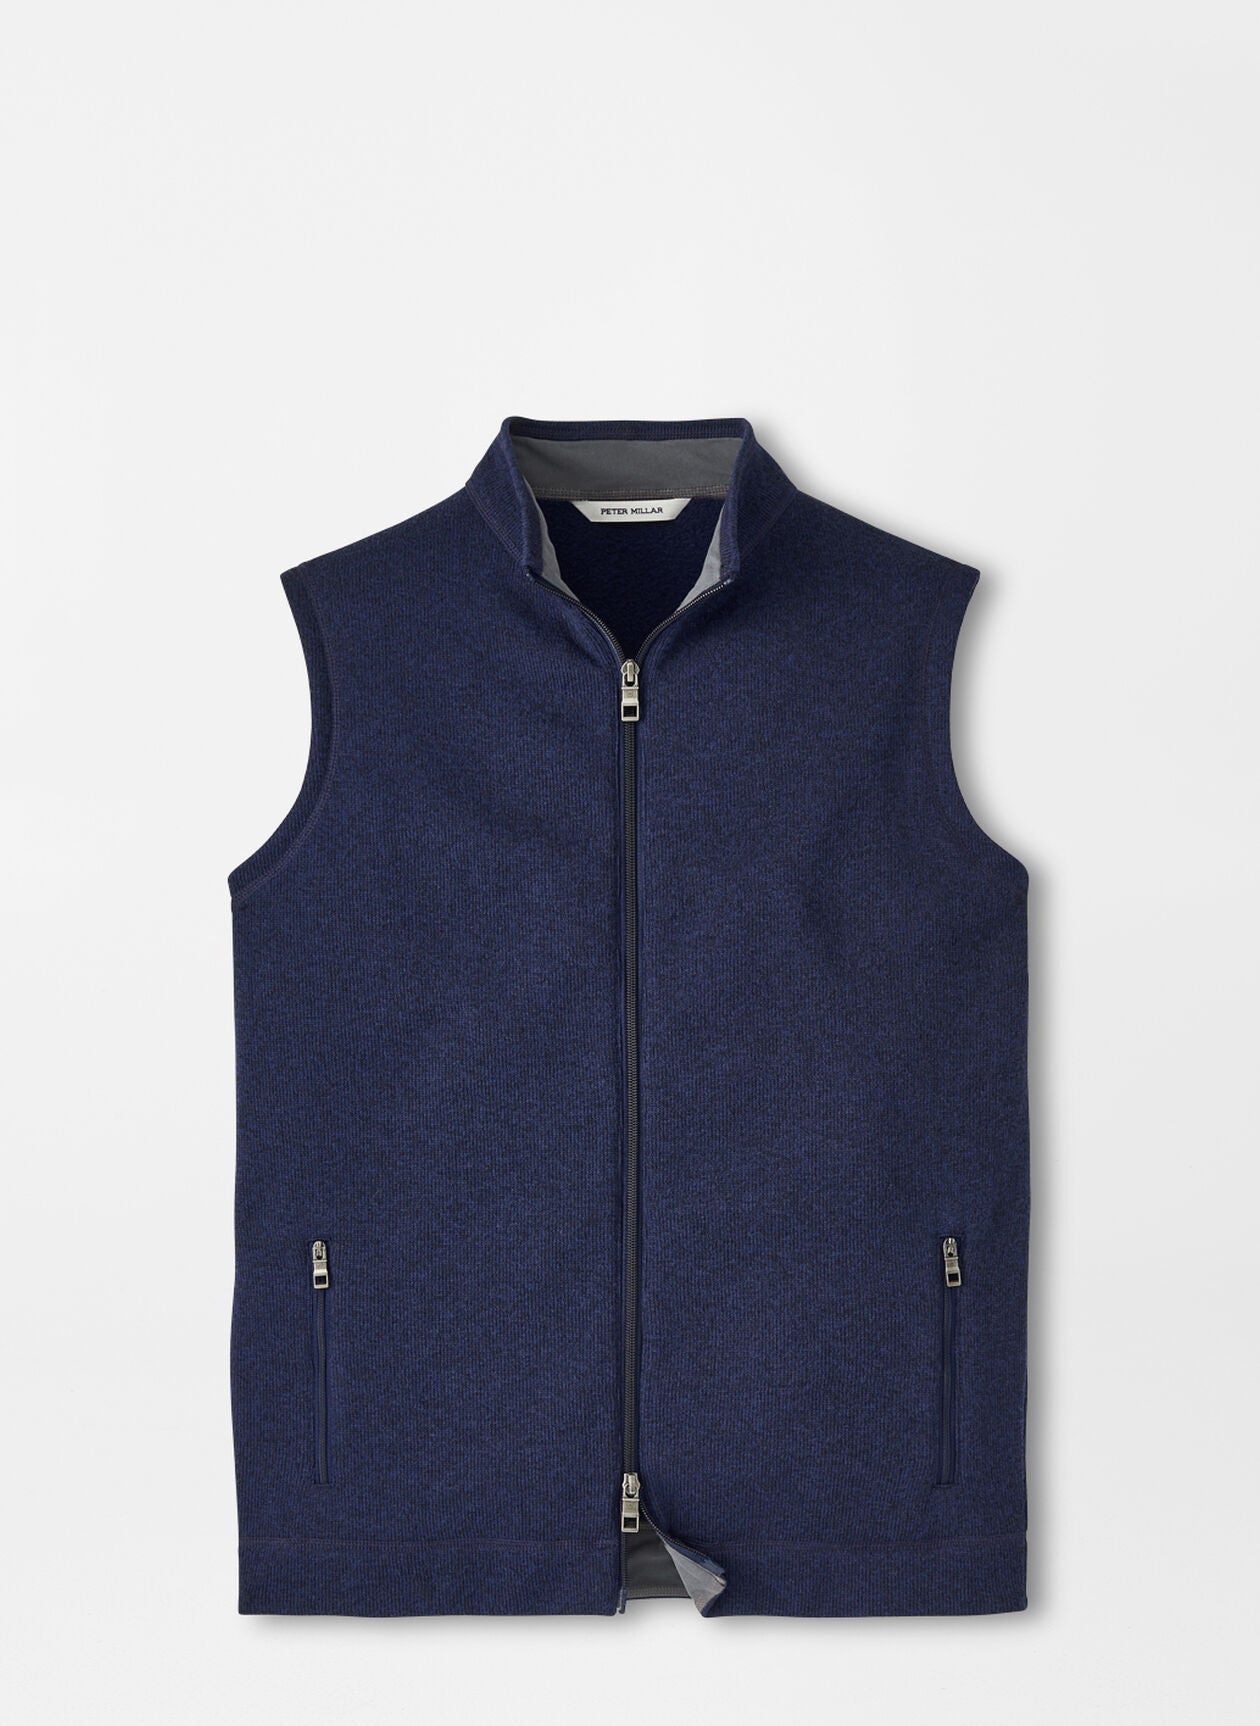 PETER MILLAR Men's Jackets NAVY / M Peter Millar Crown Sweater Fleece Vest || David's Clothing MF23K61N